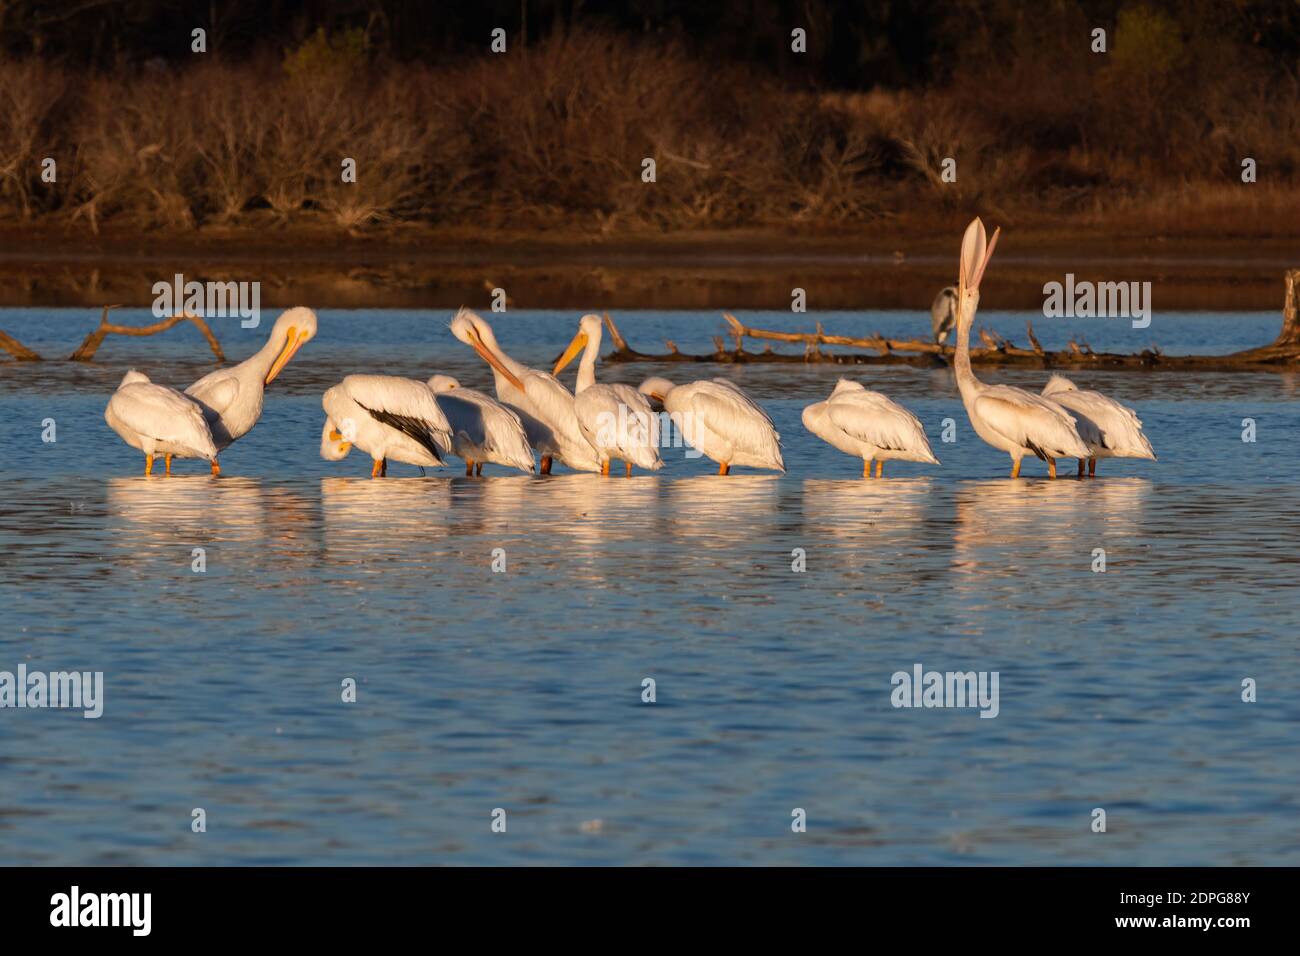 Un Pelican bianco che guarda in su con il suo grande becco aperto mentre brulica mentre si trova nelle acque poco profonde di un lago con altri pellicani nel suo gregge. Foto Stock